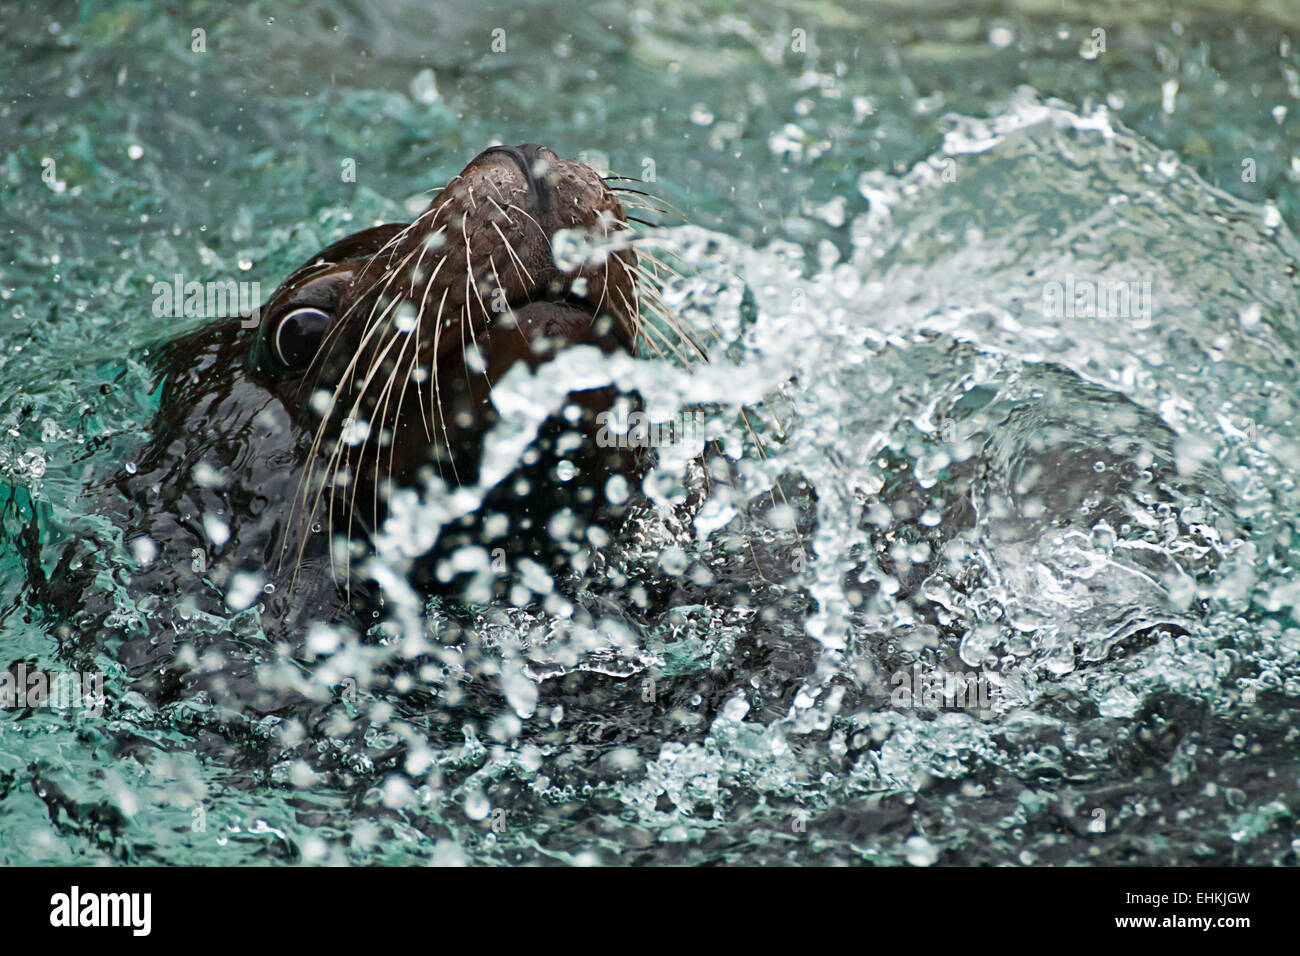 Cabeza de león marino ladrando haciendo divertido jugando alrededor y las salpicaduras de agua. Foto de stock